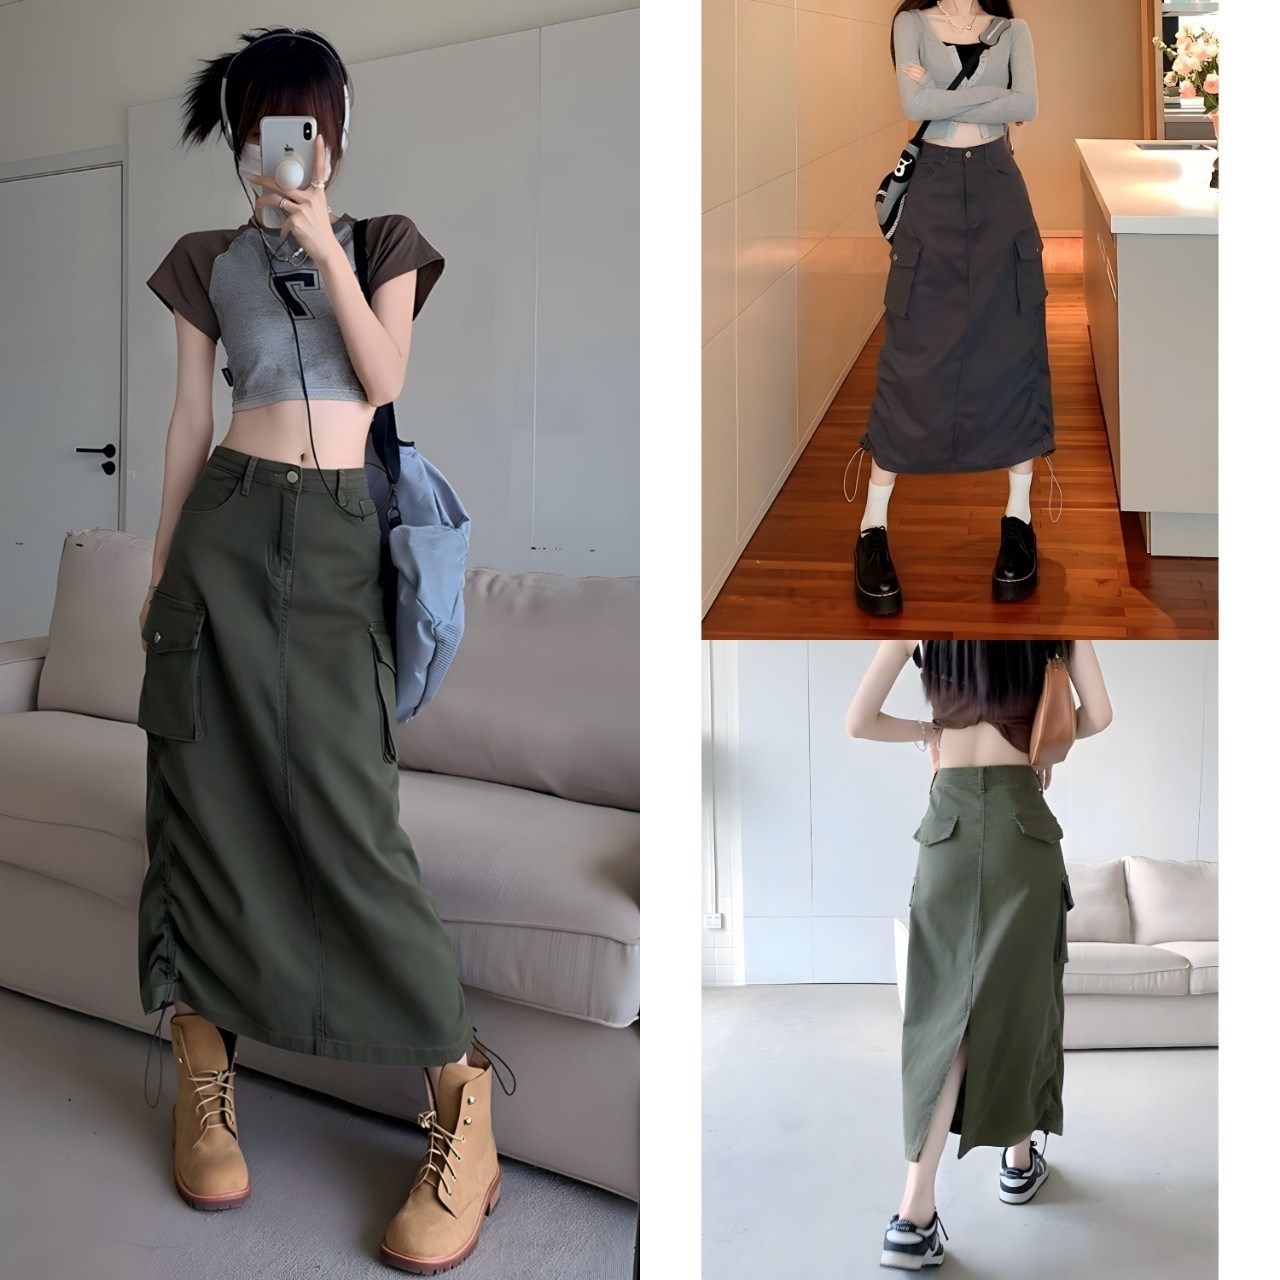 Chân Váy Xếp Ly Dáng Dài Style Hàn Quốc (hàng QC) Chân Váy Dài Chun Eo  Vintage hình thật - Tìm Voucher